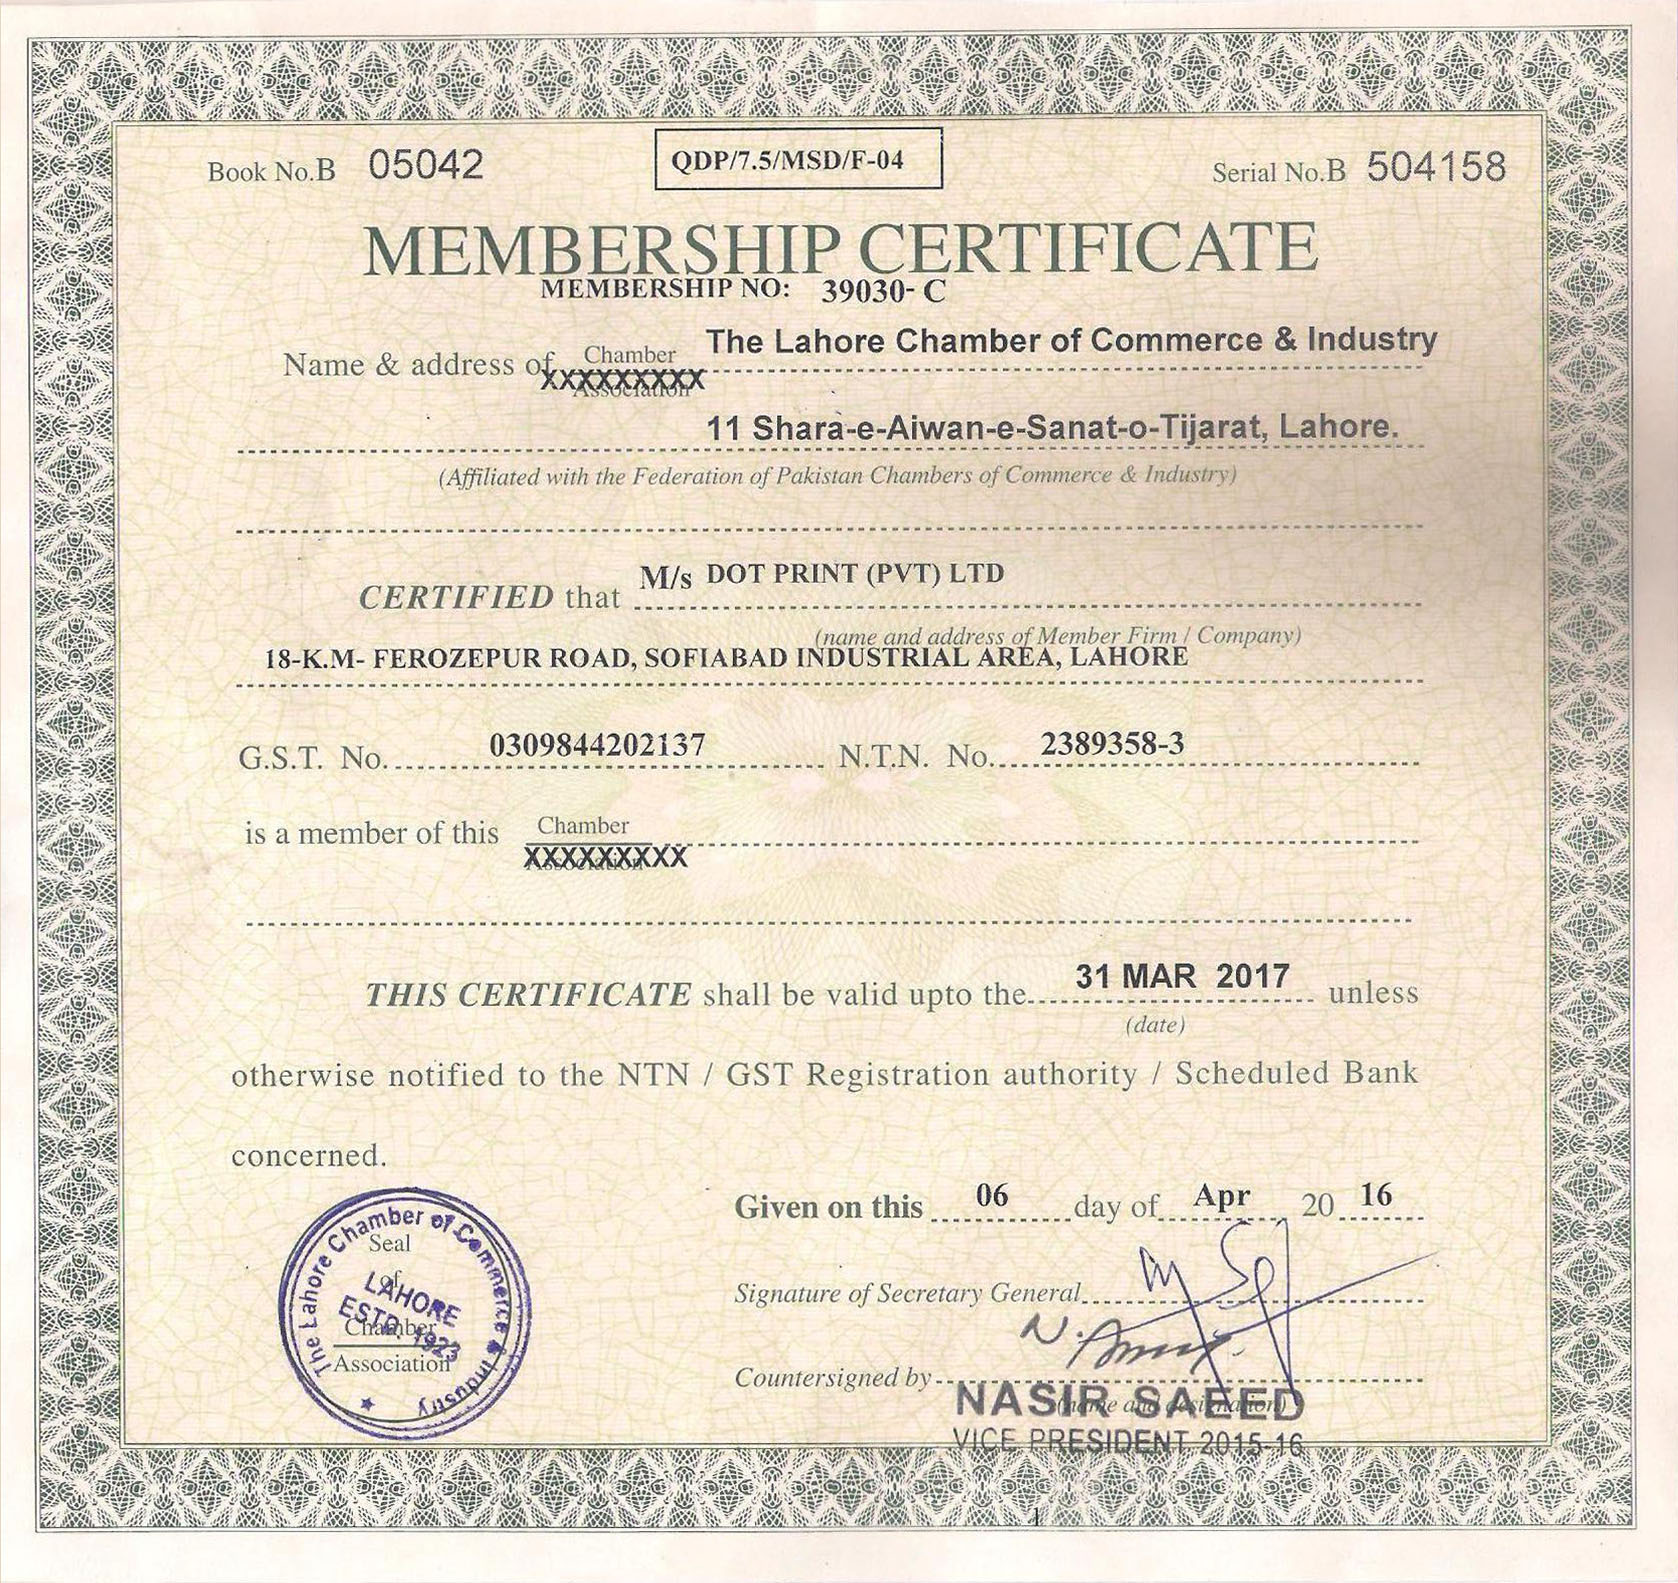 LCCI-Certificate